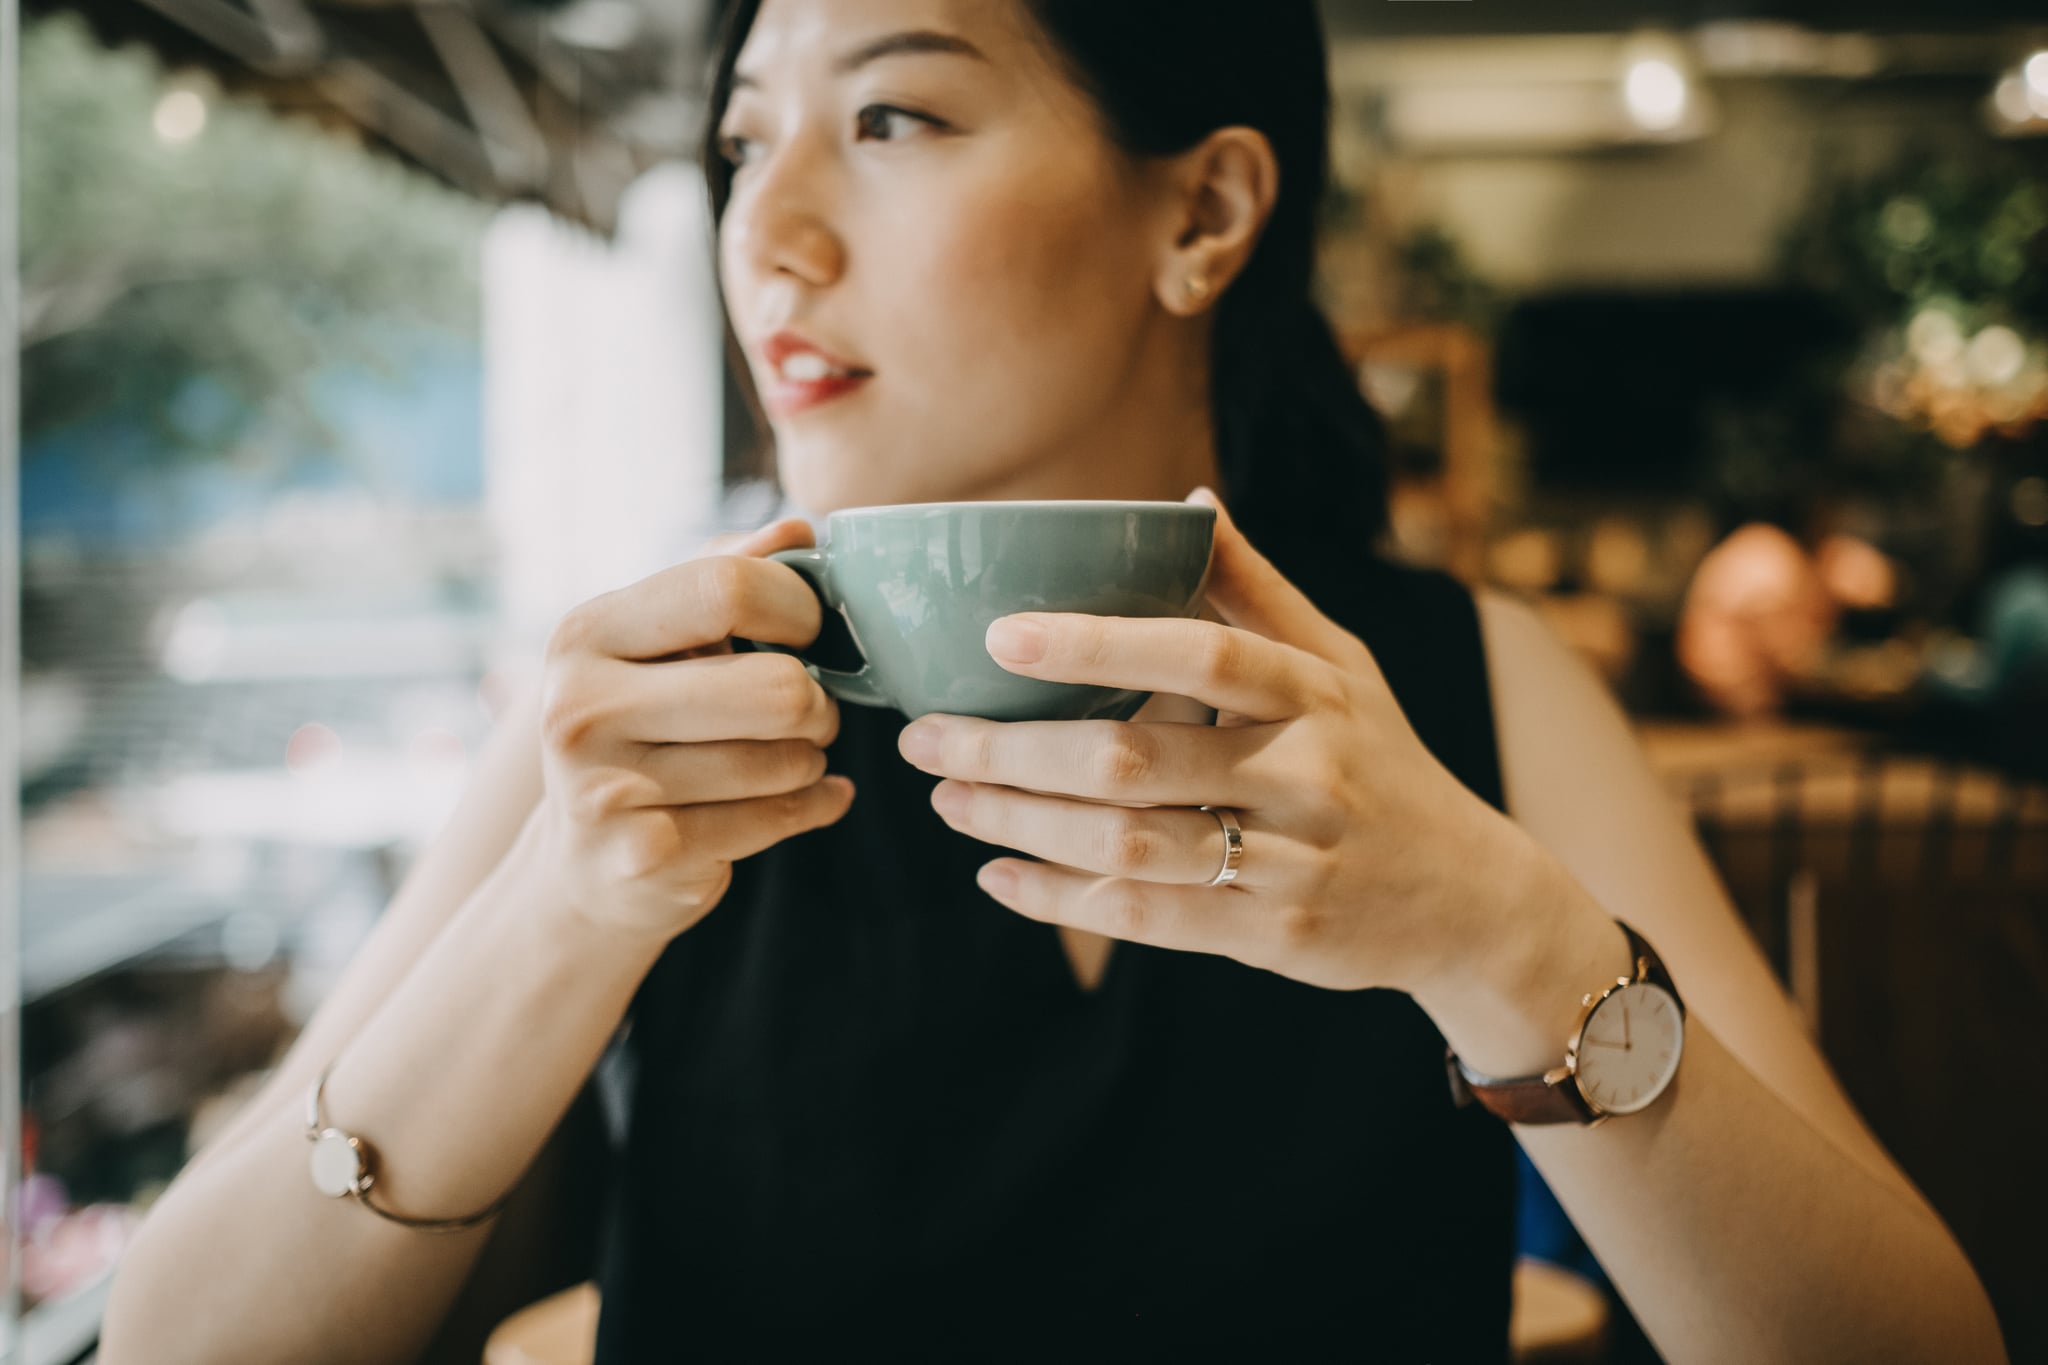 Beautiful young woman enjoying coffee in cafe